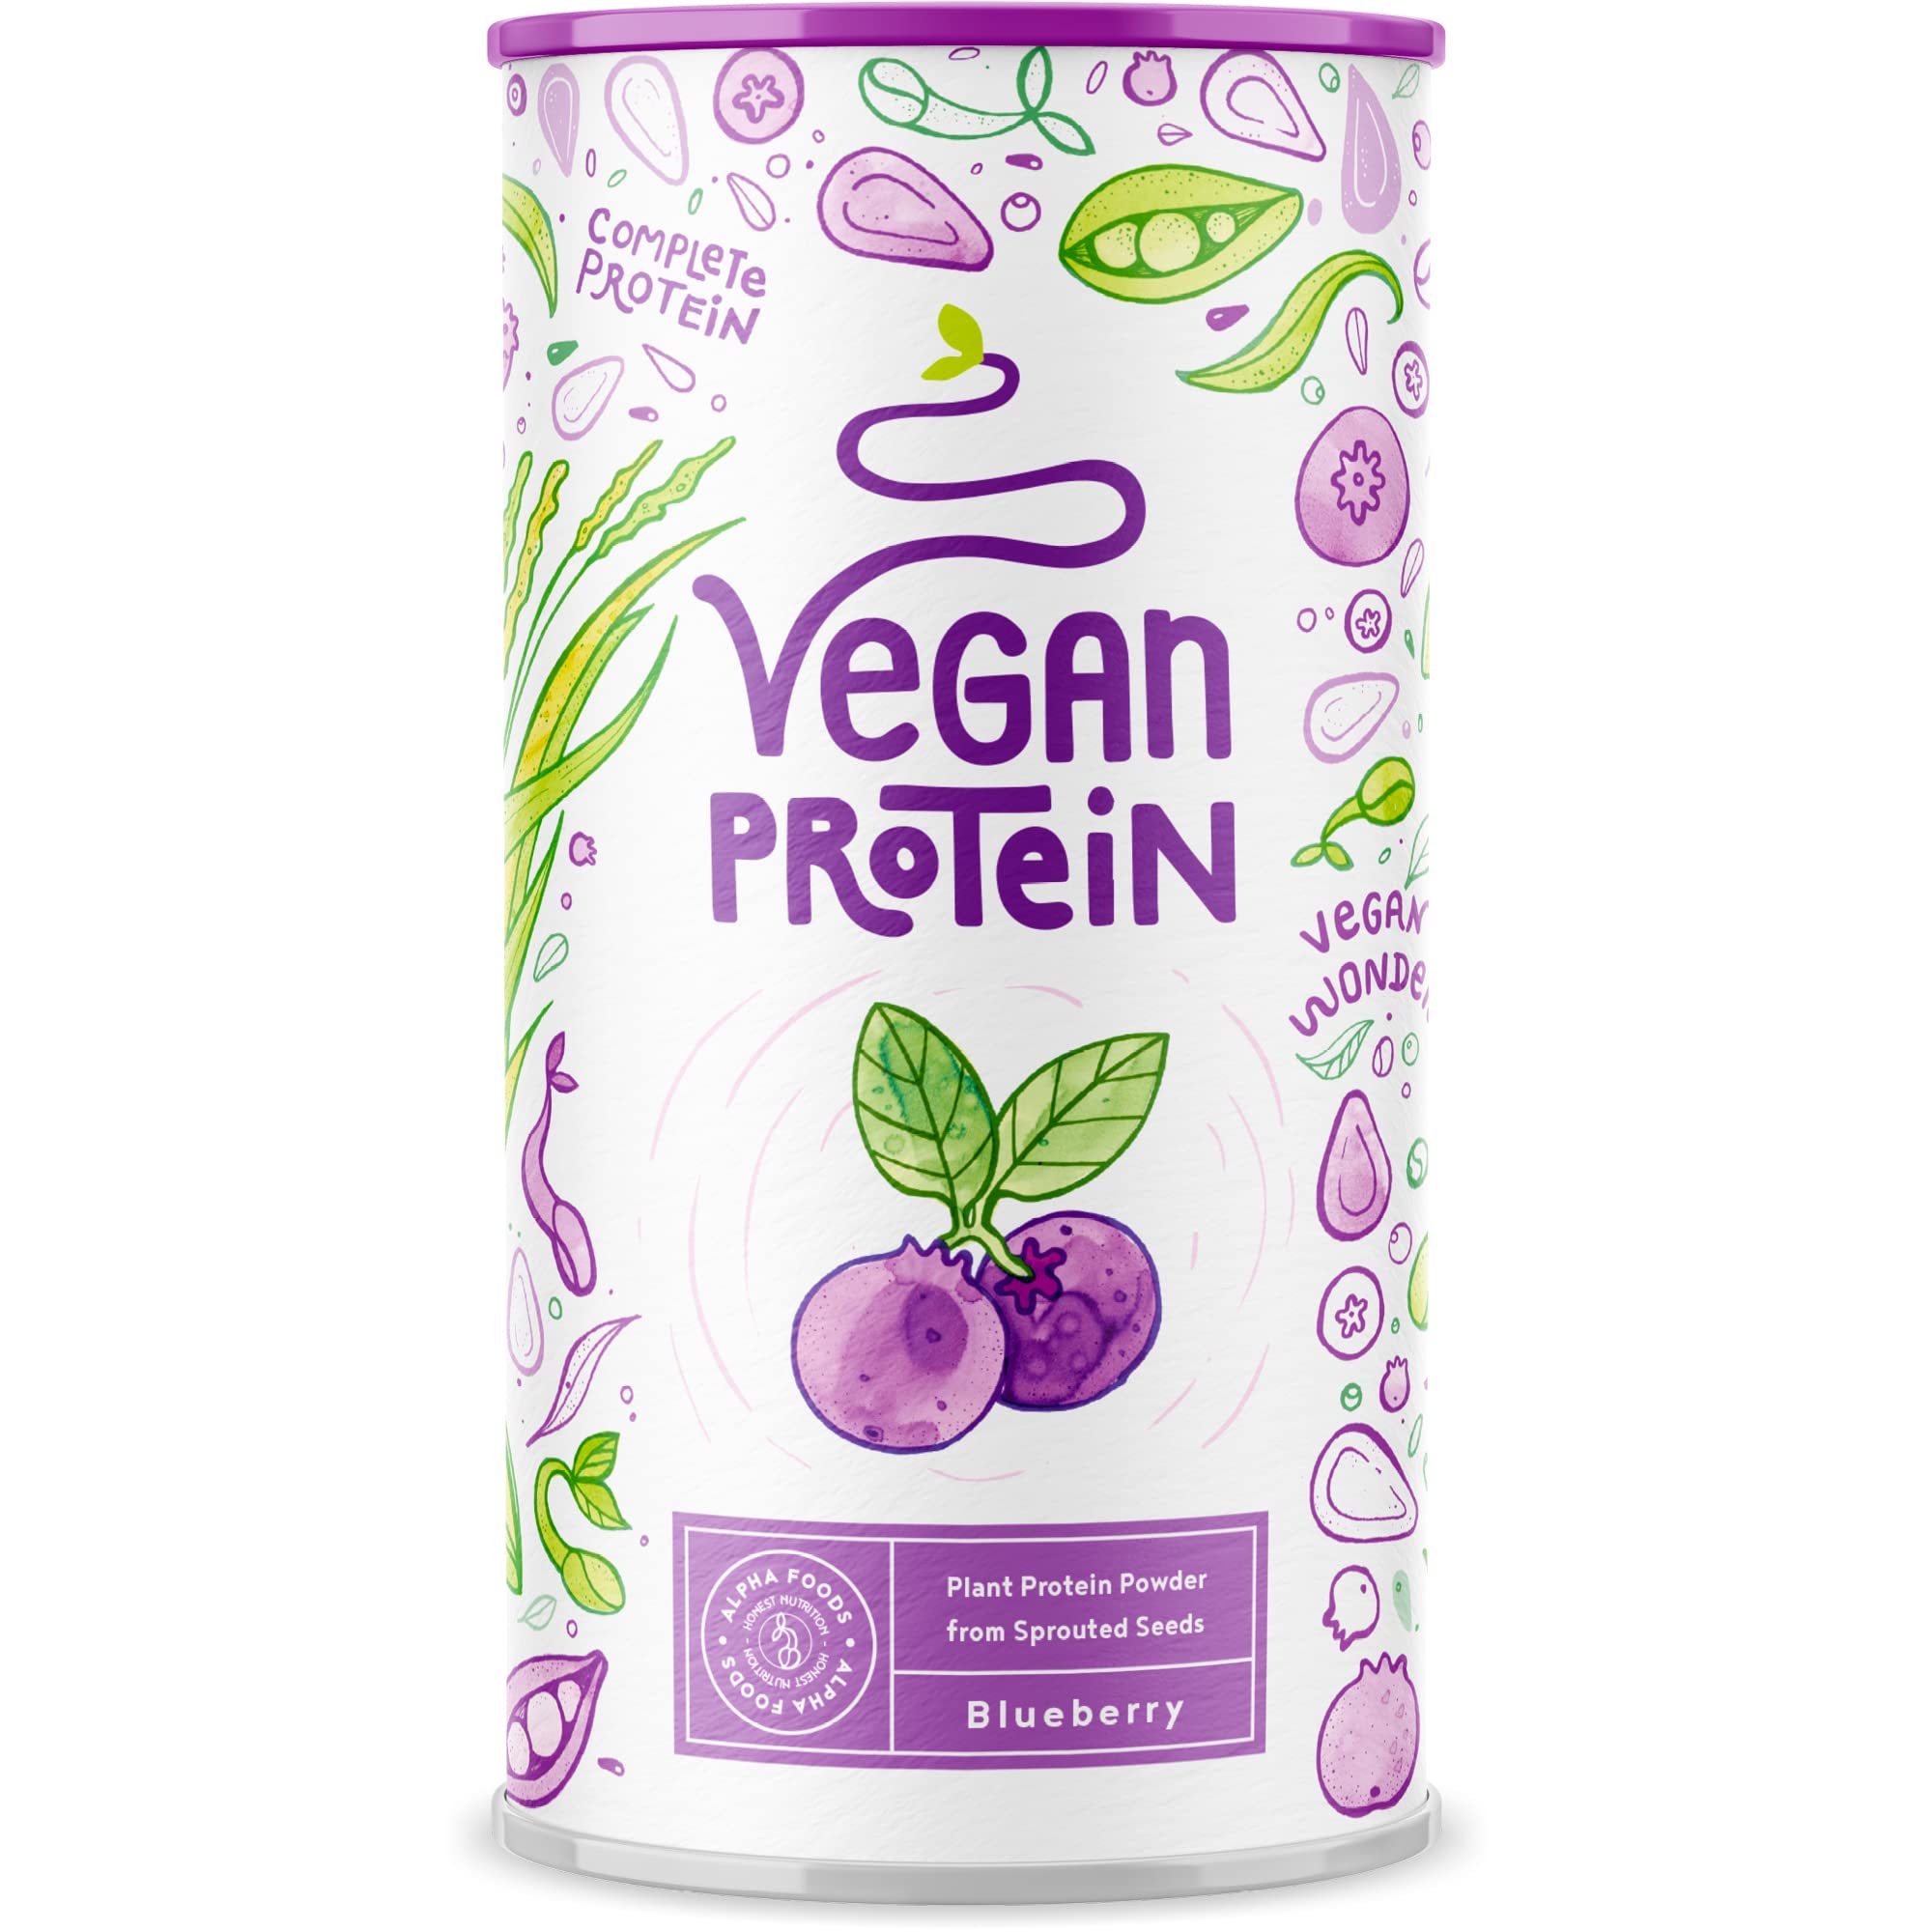 Vegan Protein - BLAUBEERE - Pflanzliches Proteinpulver aus Reis, Lupinen, Erbsen, Chia-Samen, Leinsamen, Amaranth, Sonnenblumen- und Kürbiskernen - 600 Gramm Pulver